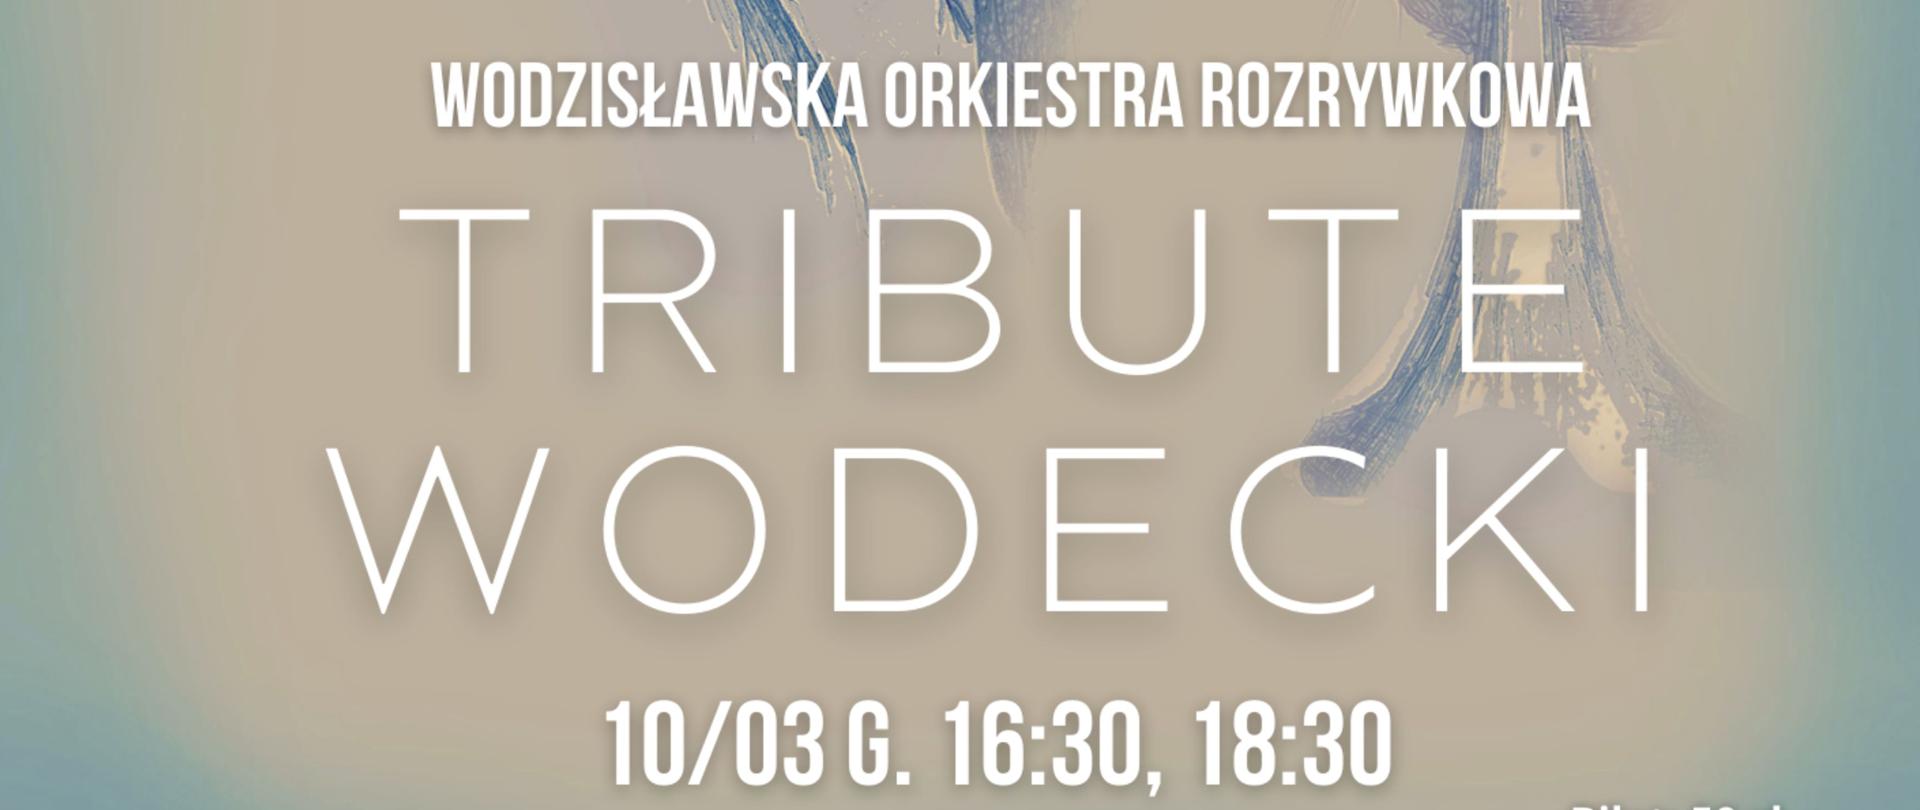 Plakat z portretem Wodeckiego, z napisem Wodzisławska Orkiestra Rozrywkowa, Tribute Wodecki, 10.03 godz. 16:30 i 18:30